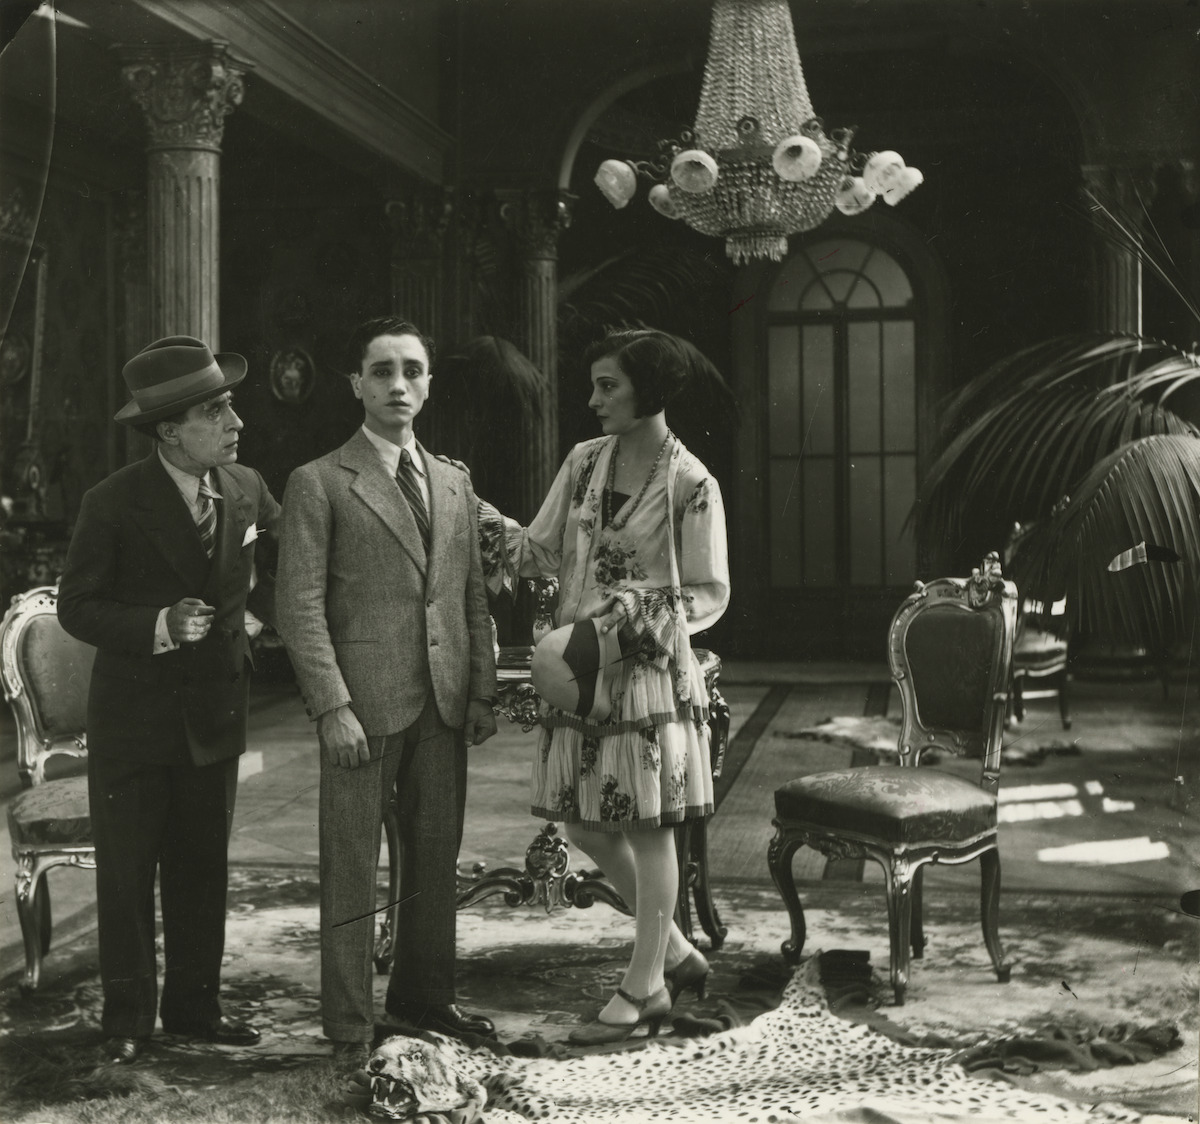 Un fotogramma da Napoli sirena della canzone (1929)